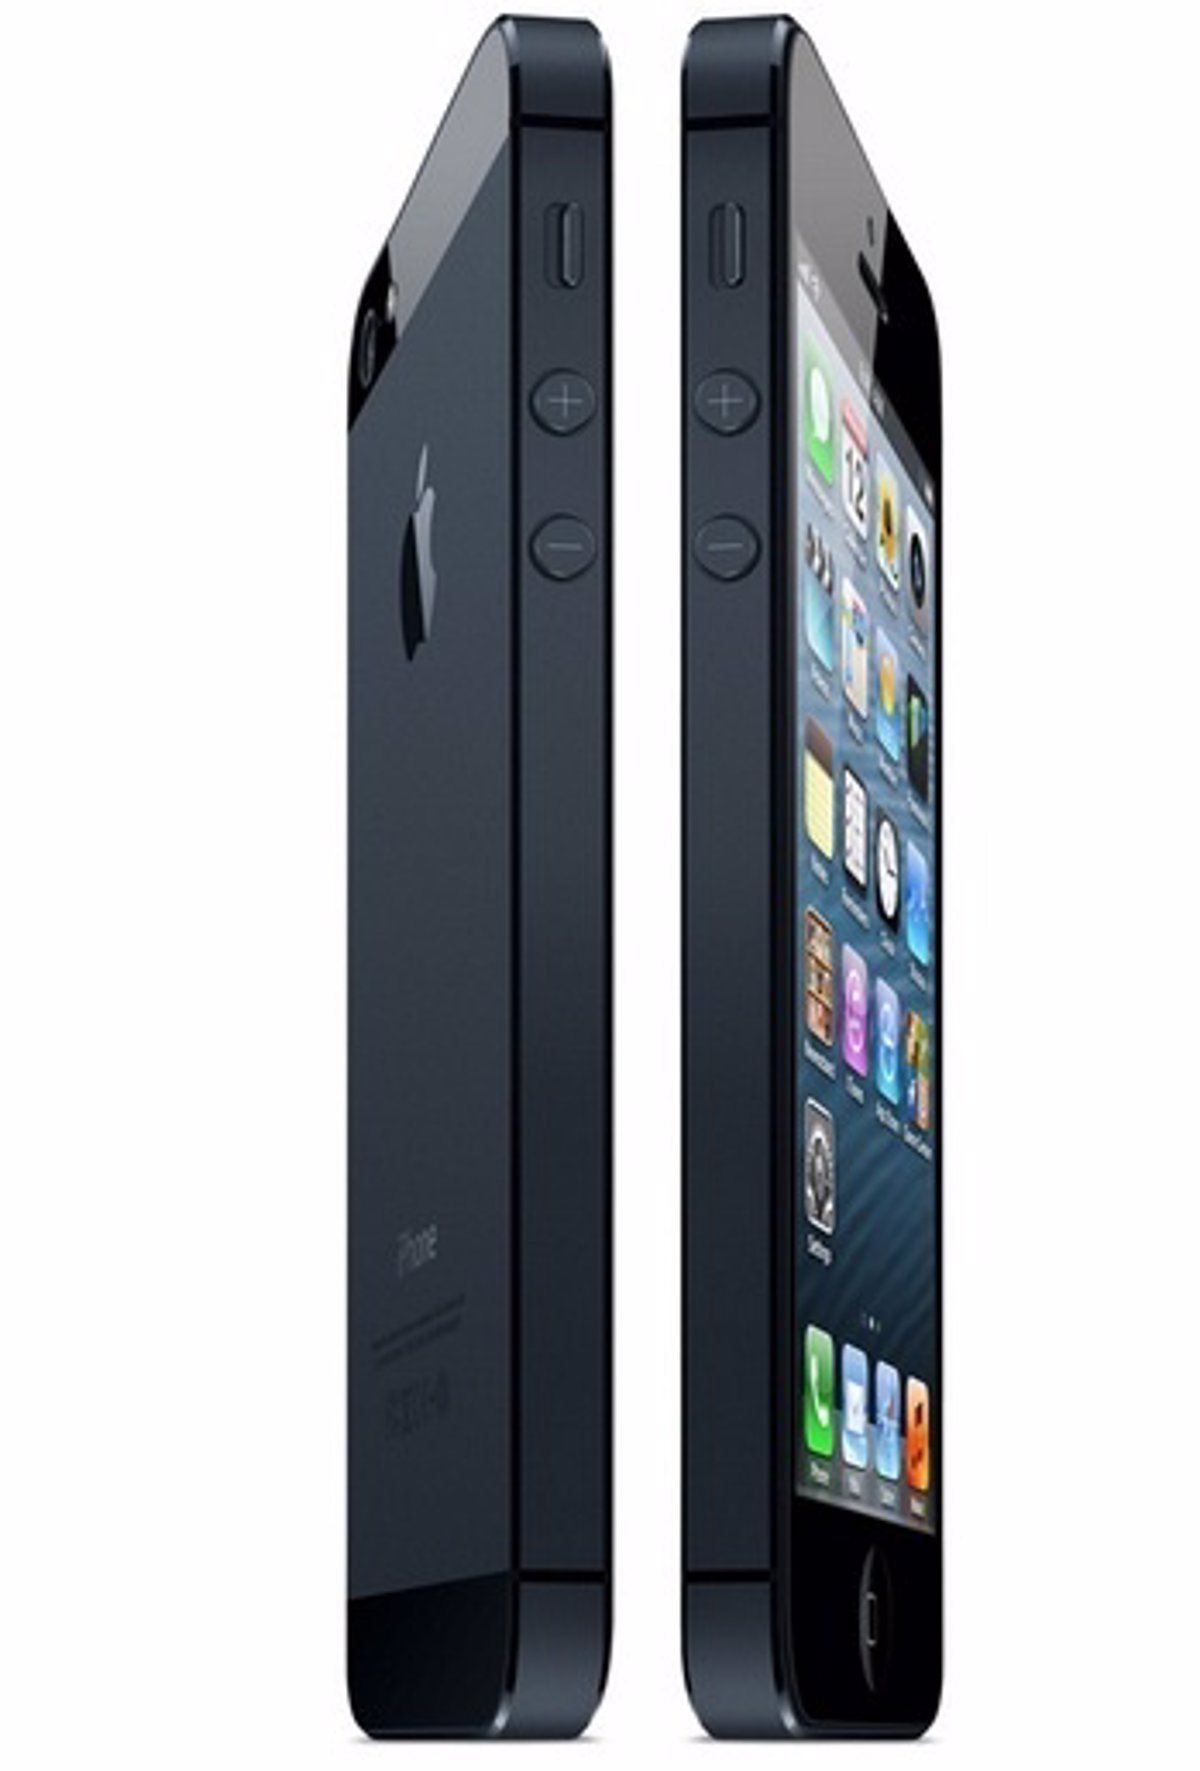 Apple lanza tres modelos distintos del iPhone 5 para soportar red 4G LTE